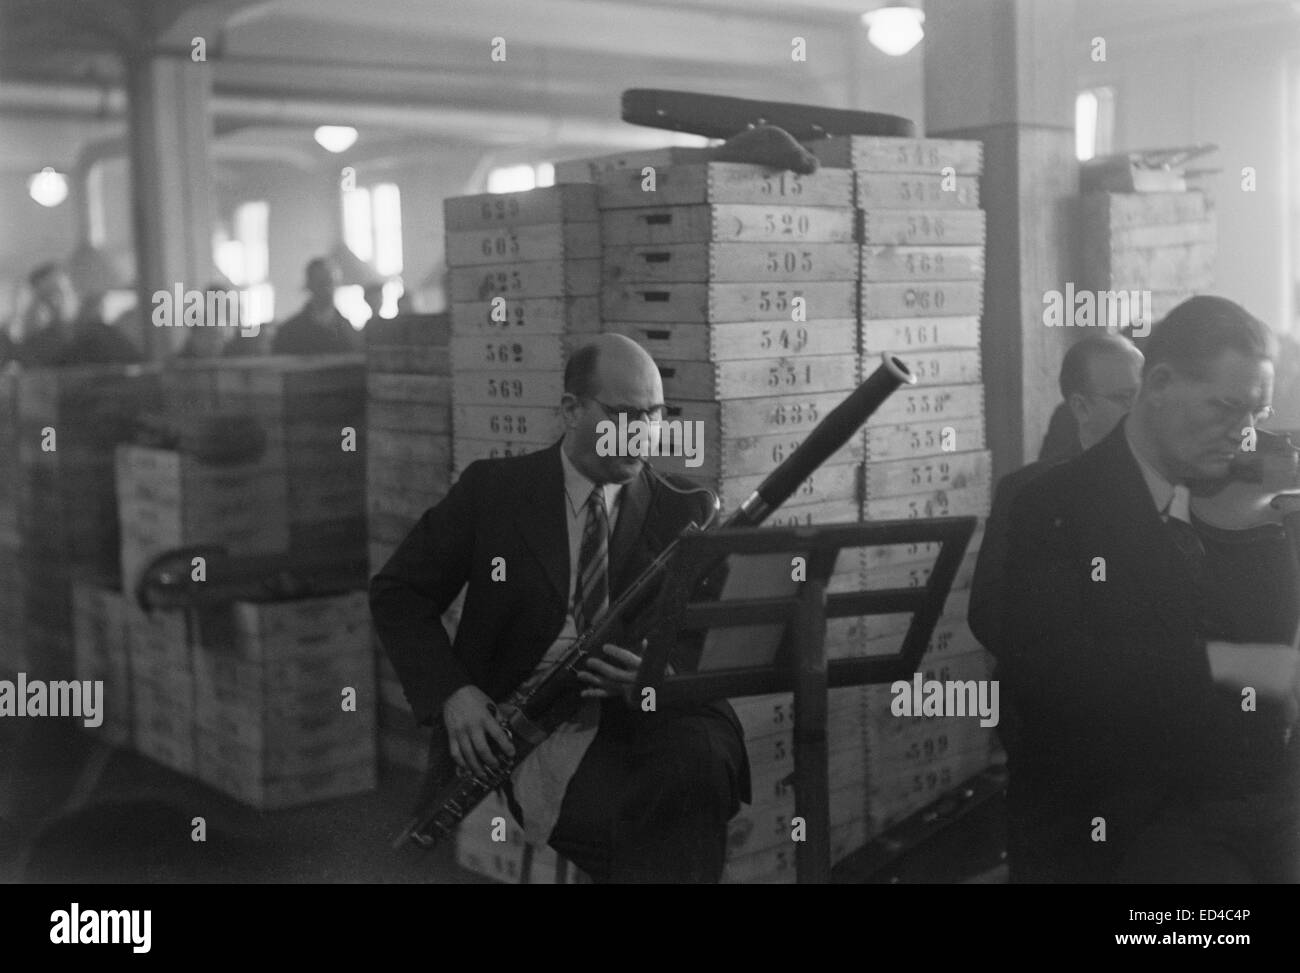 L'Orchestre symphonique de la radio finlandaise bassoniste dans une usine, concert Banque D'Images